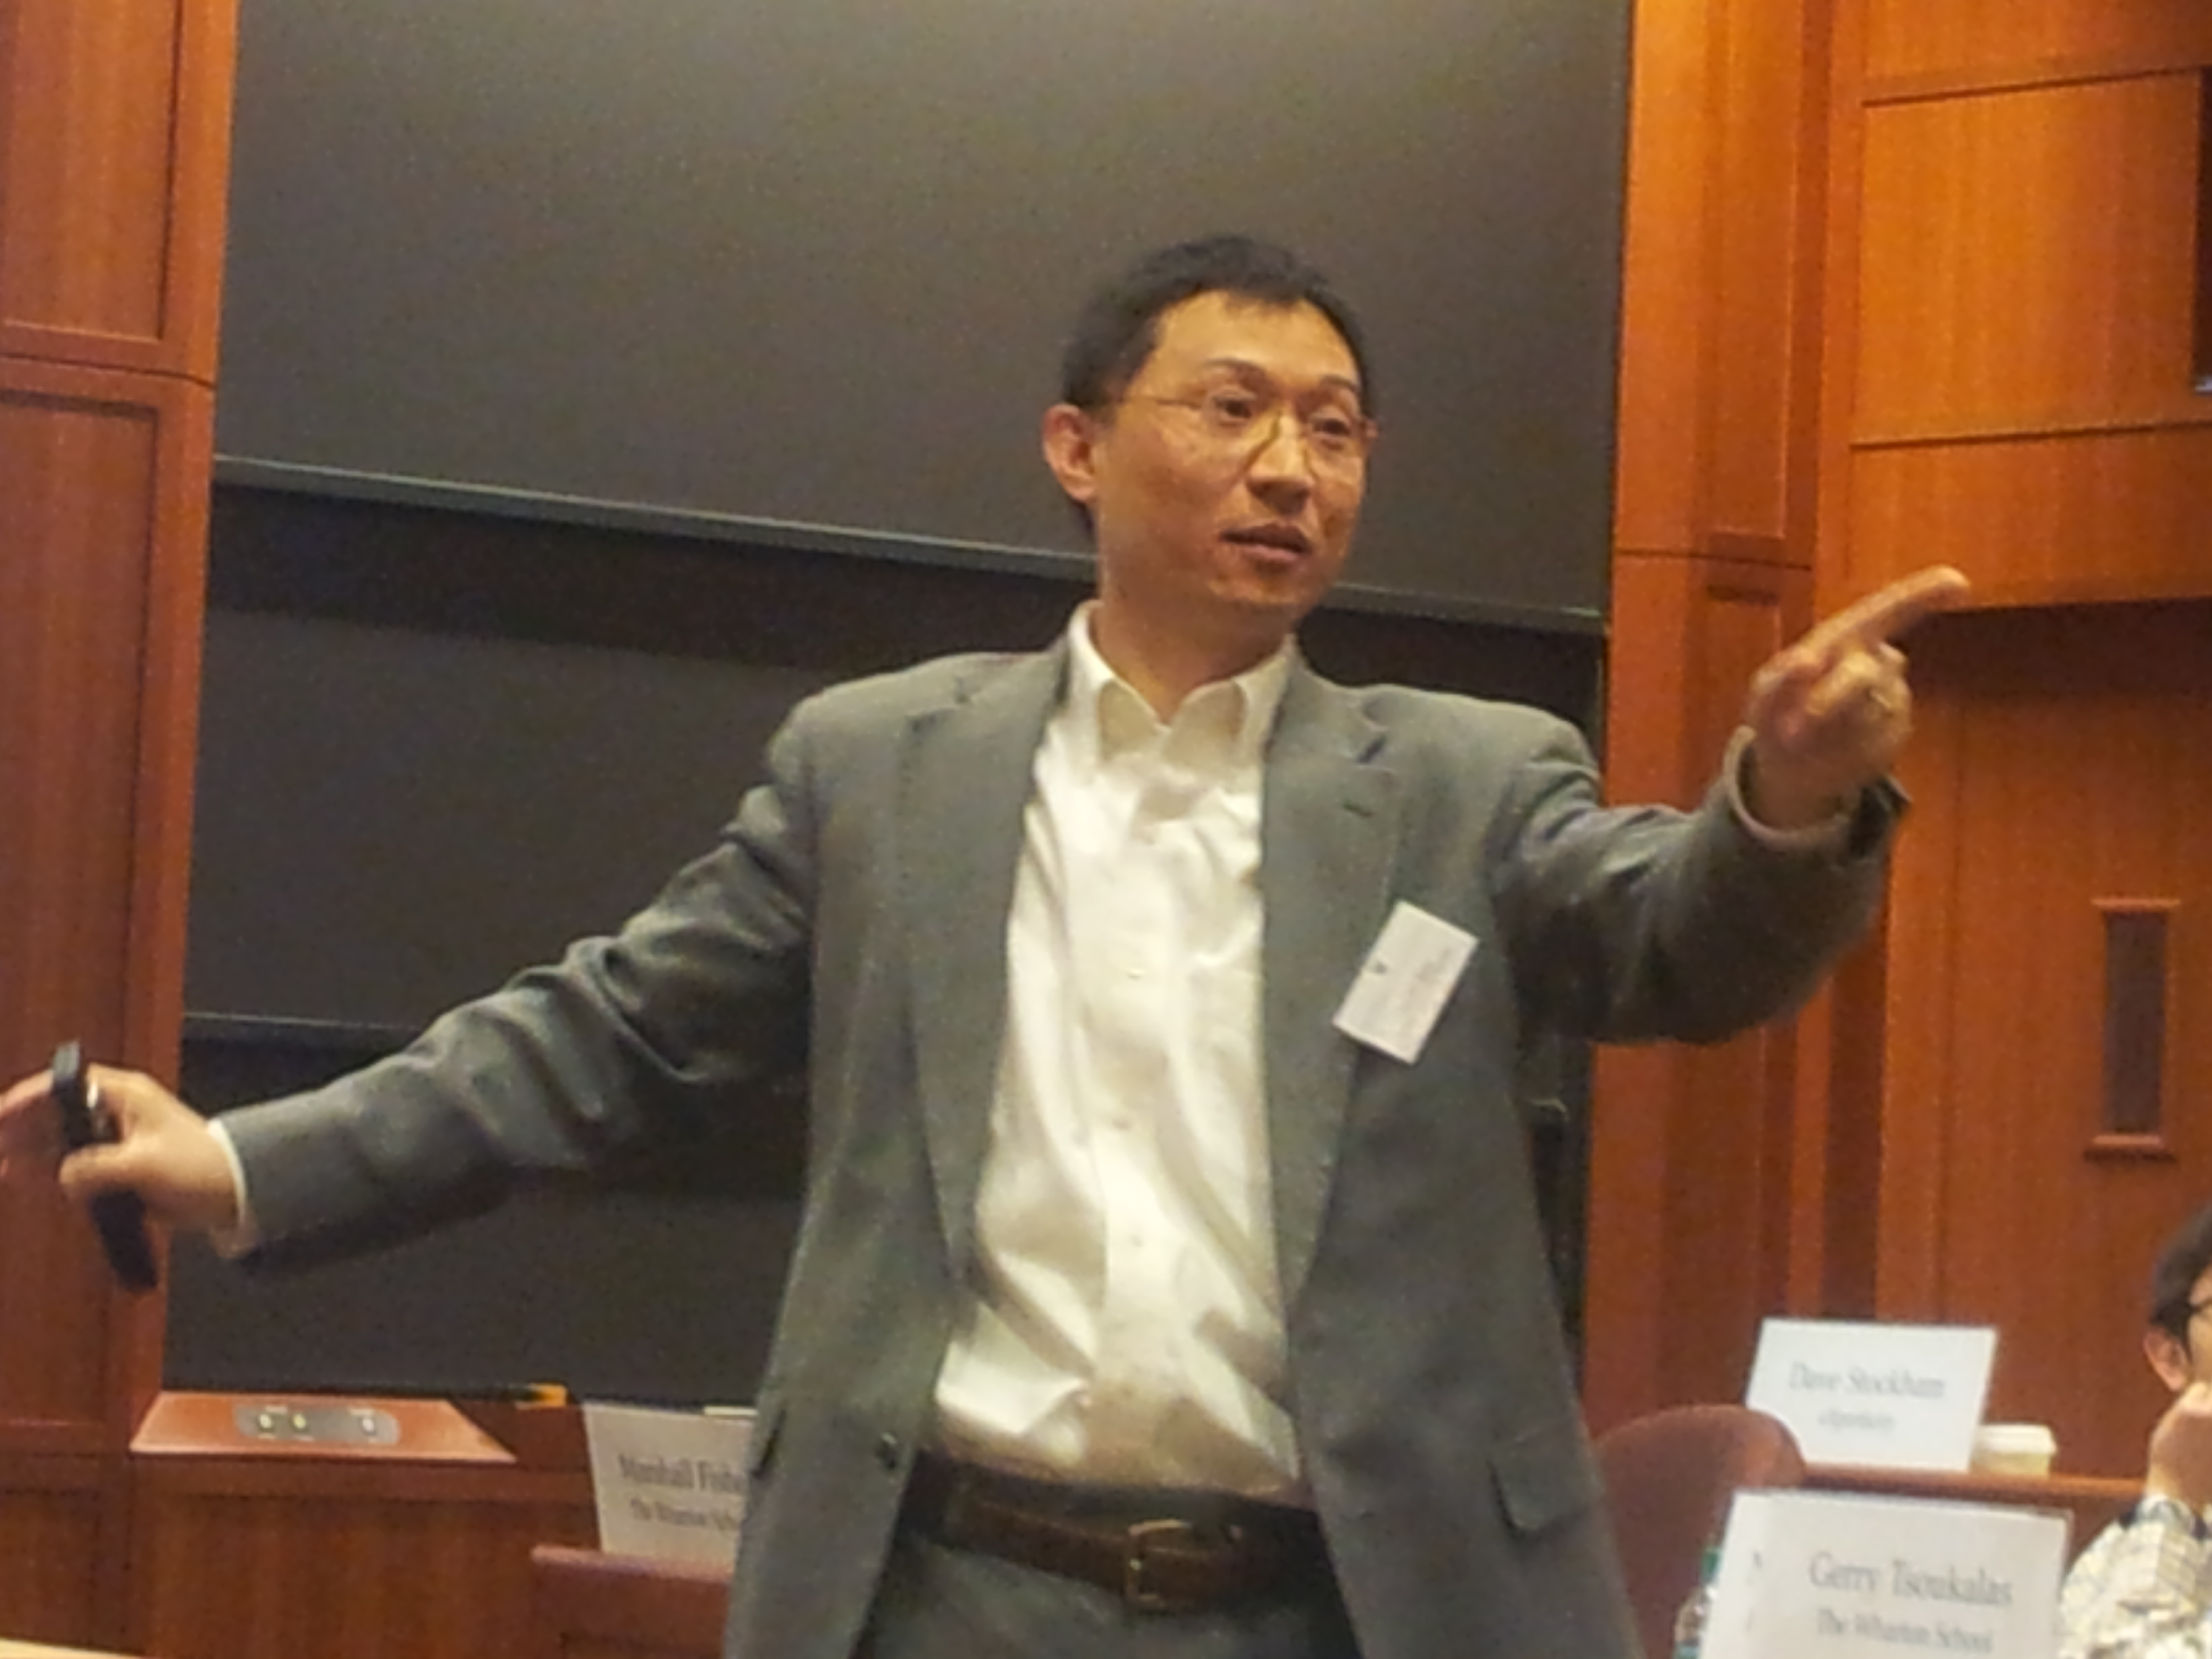 Professor Ren Speaking at Harvard Business School (May 2013)